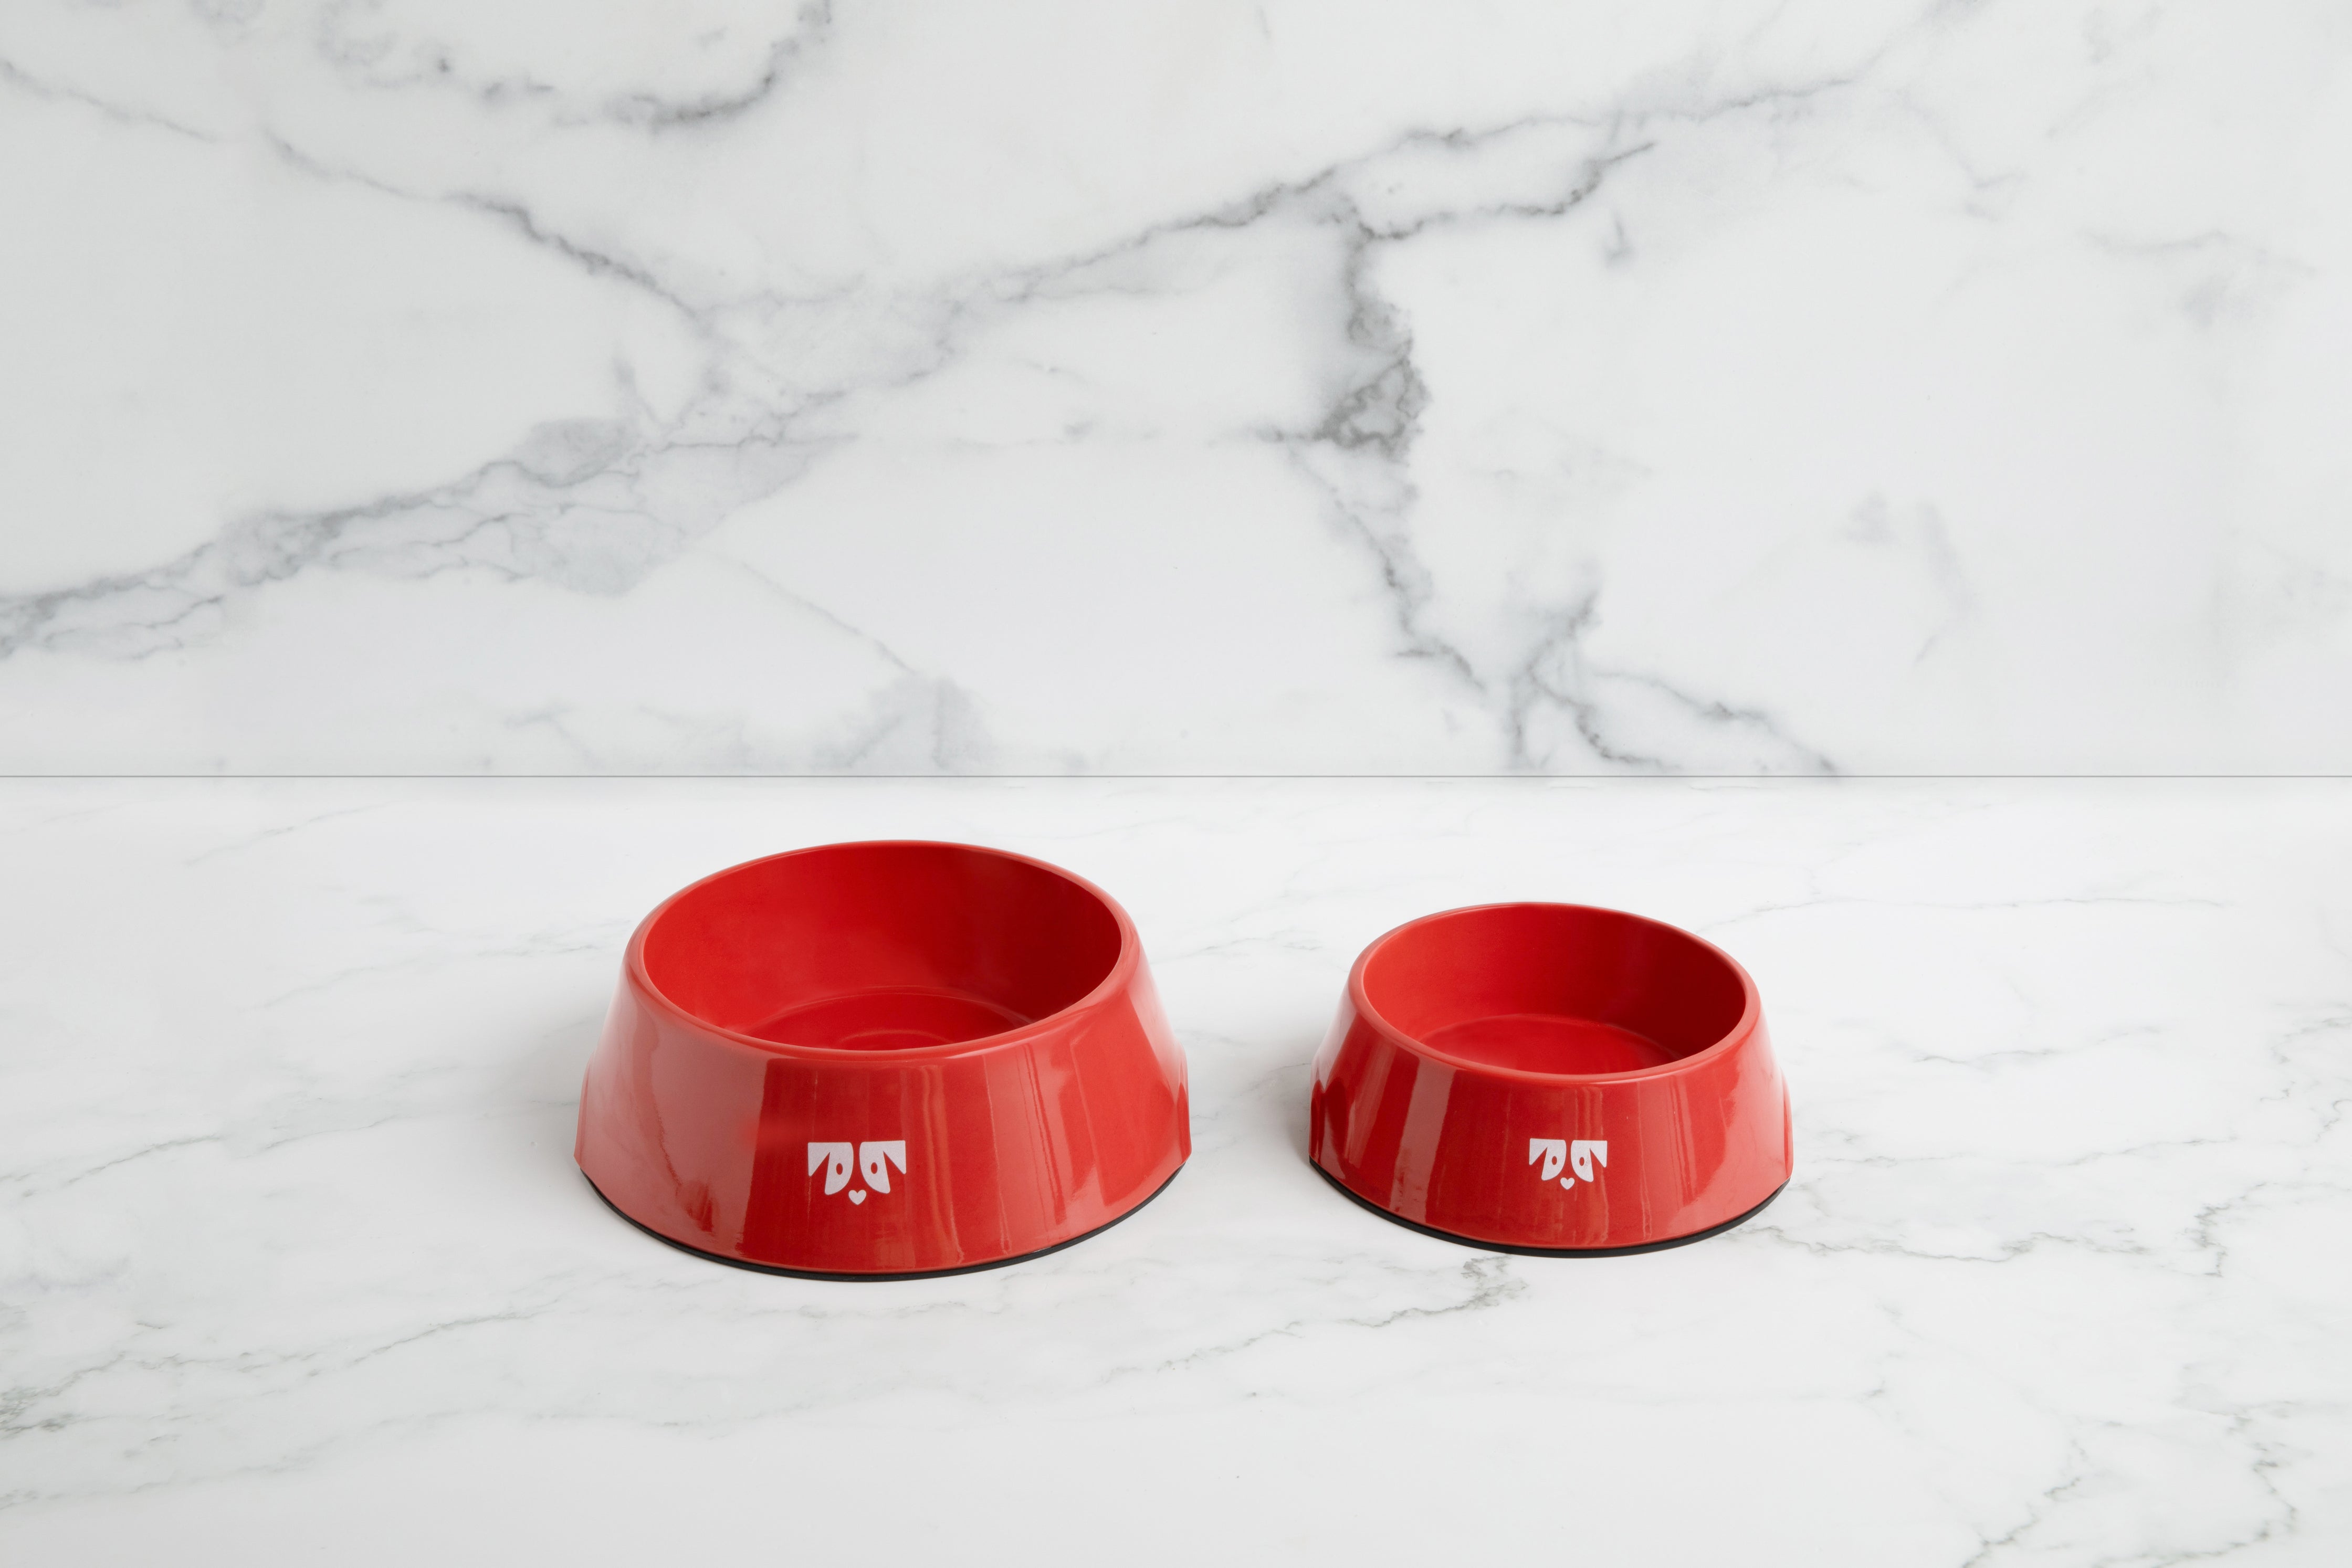 Ohriginal Red Bowls